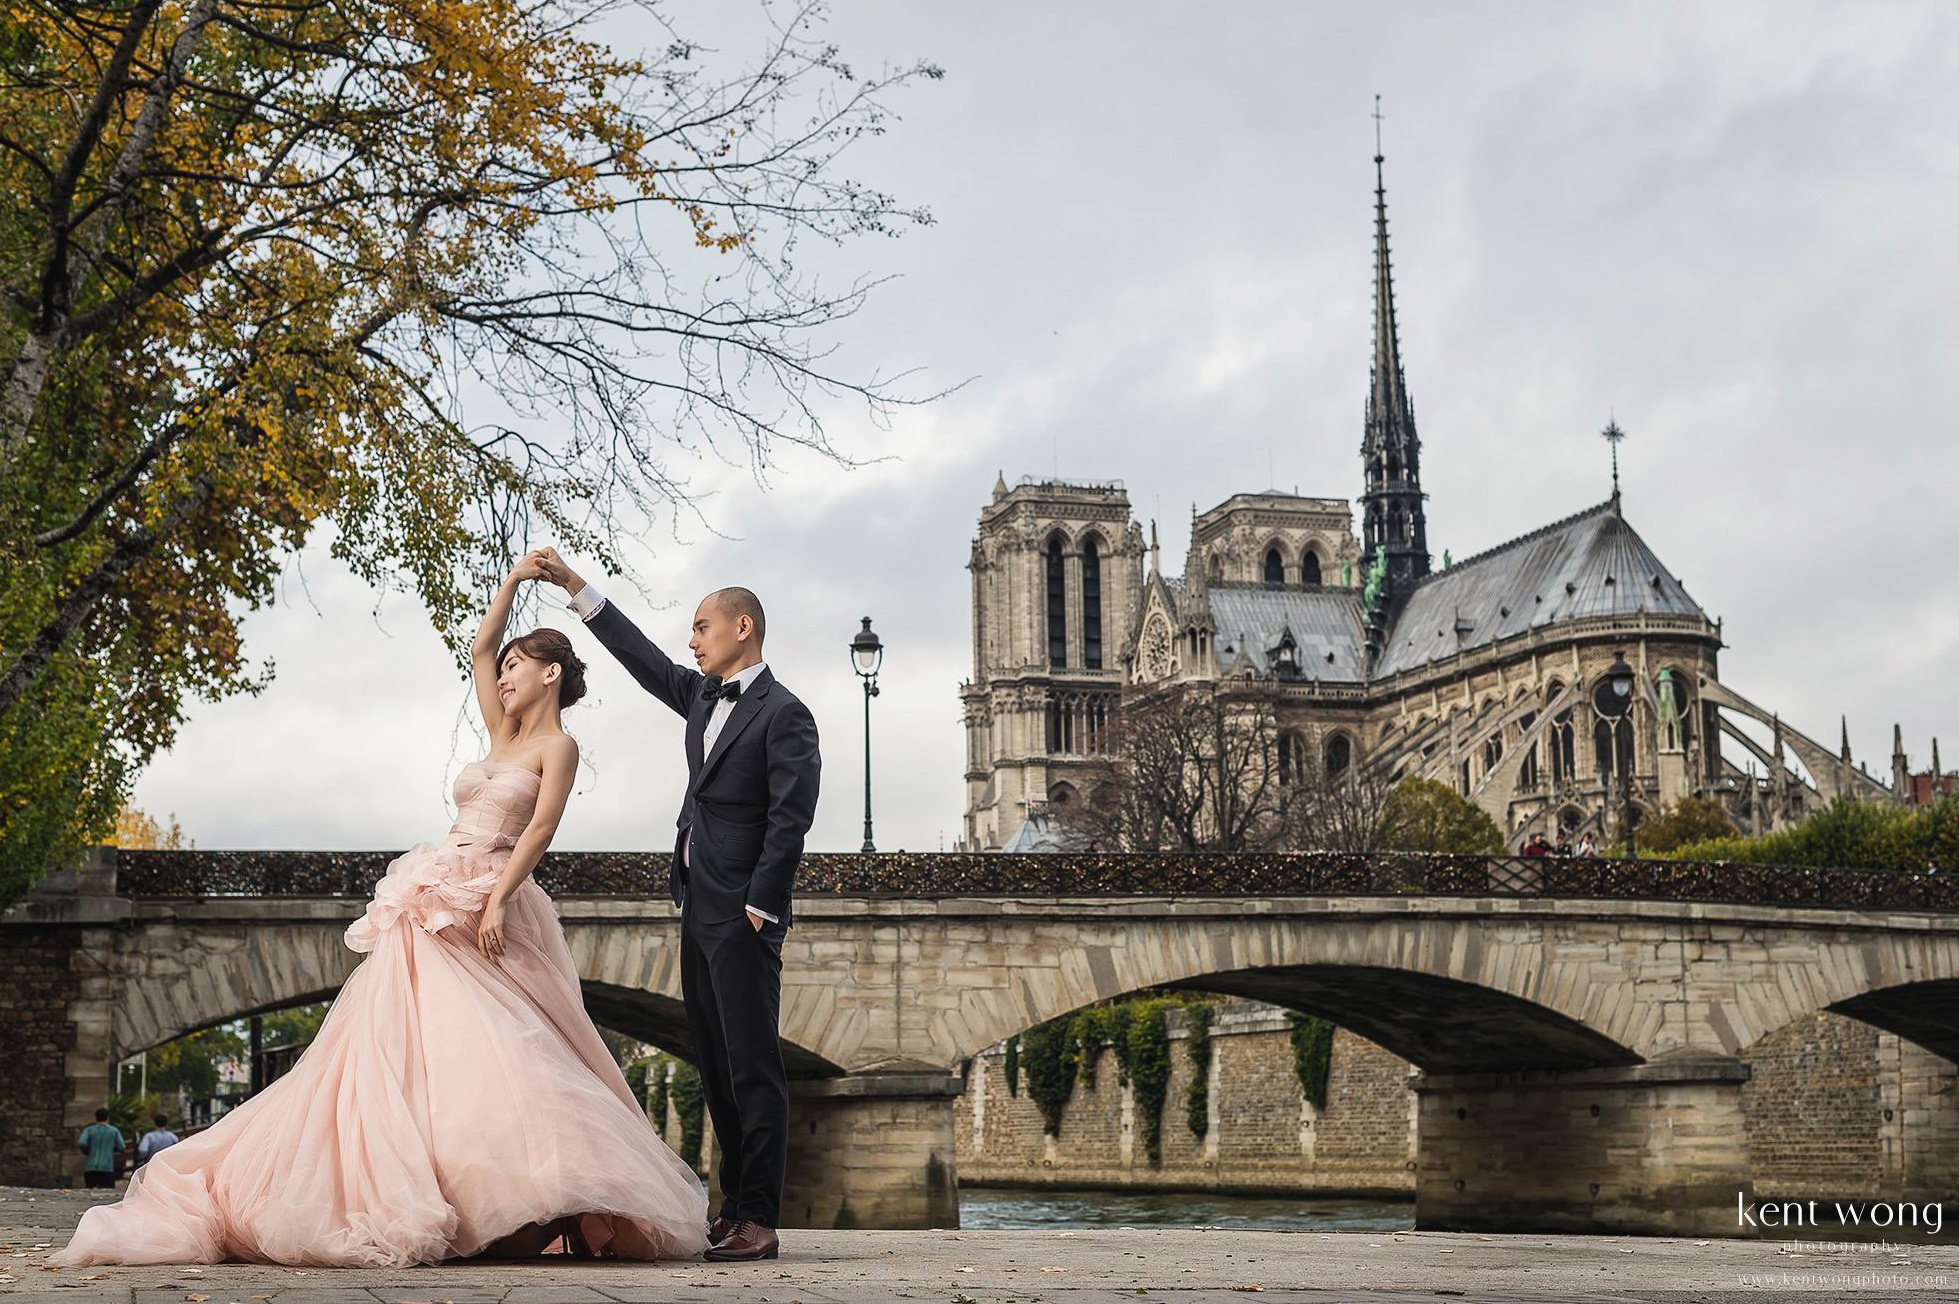 Paris romance is a total dream!